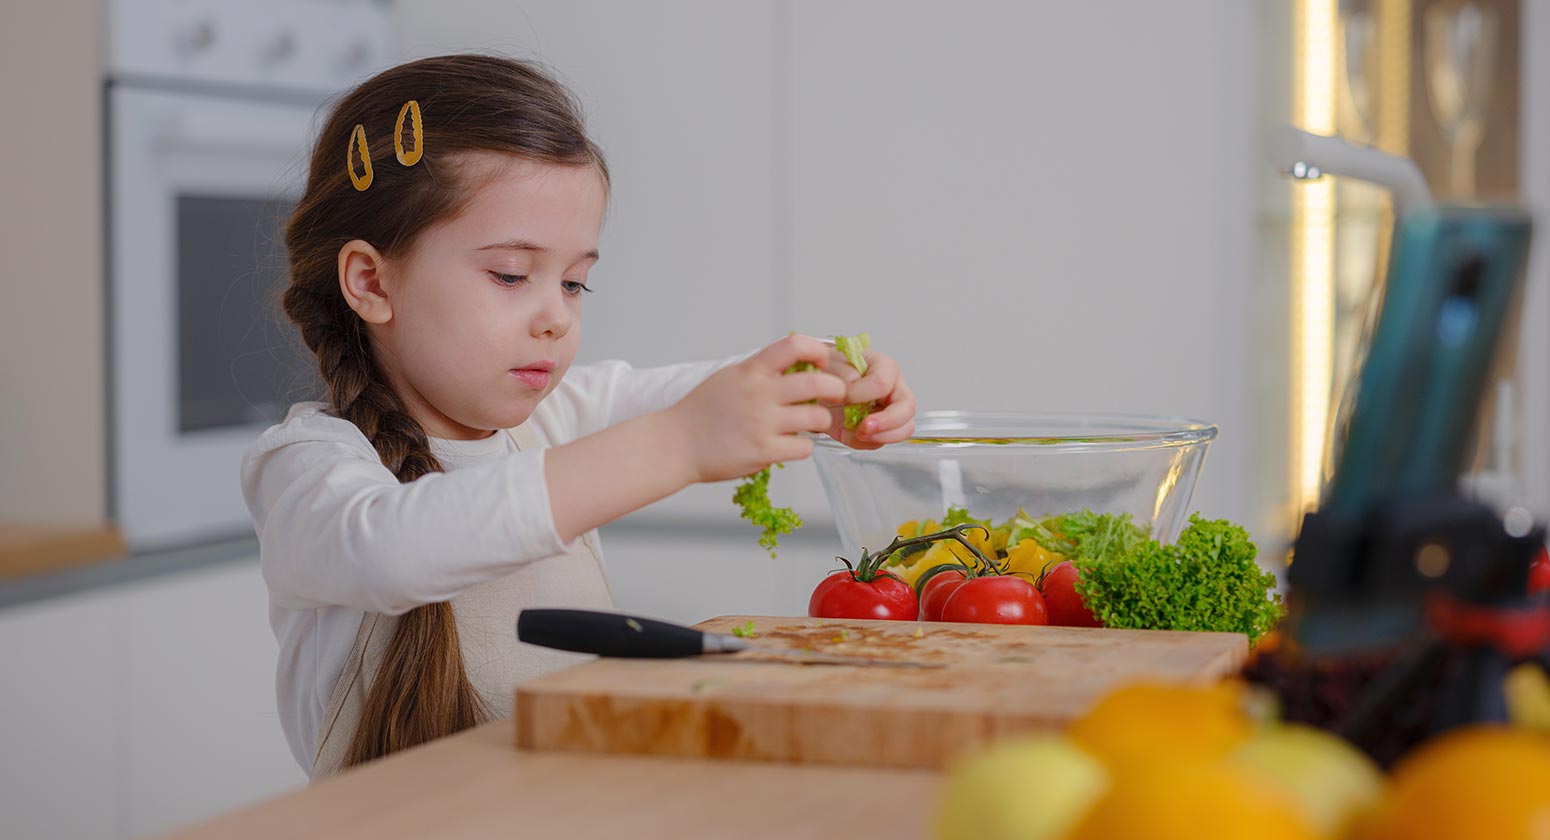 Incentivar hábitos saudáveis, Foto de uma menina na cozinha enquanto segura folhas de alface, a sua frente, está uma tábua de corte com tomate, alface e outras hortaliças e frutas